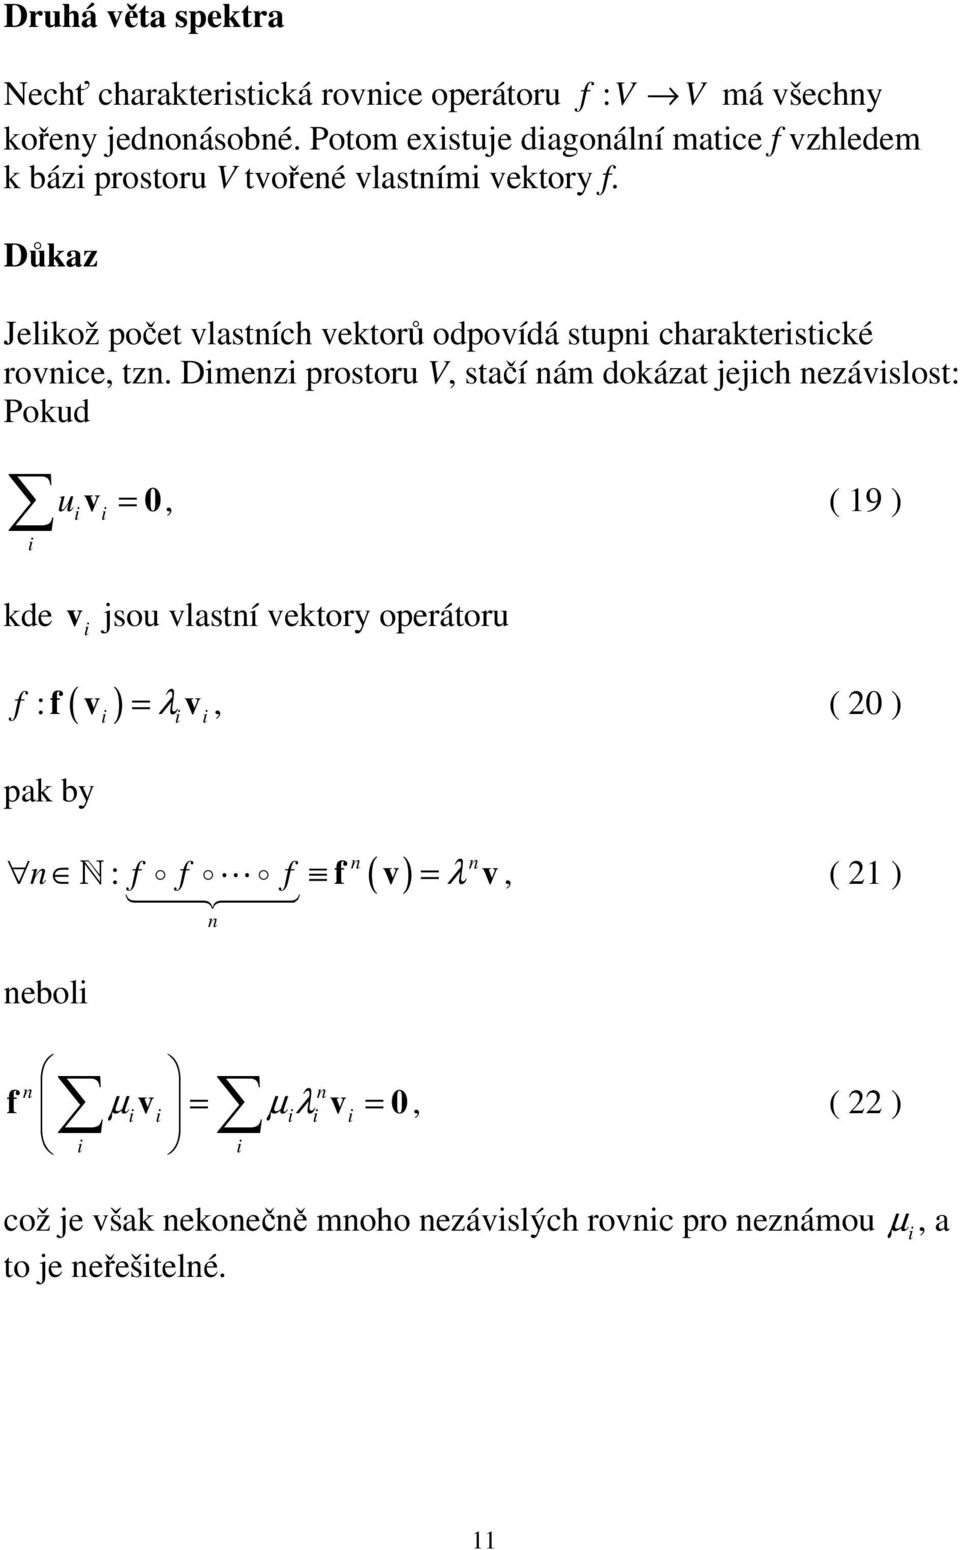 Důkaz Jelkož počet vlastích vektorů odpovídá stup charakterstcké rovce, tz.